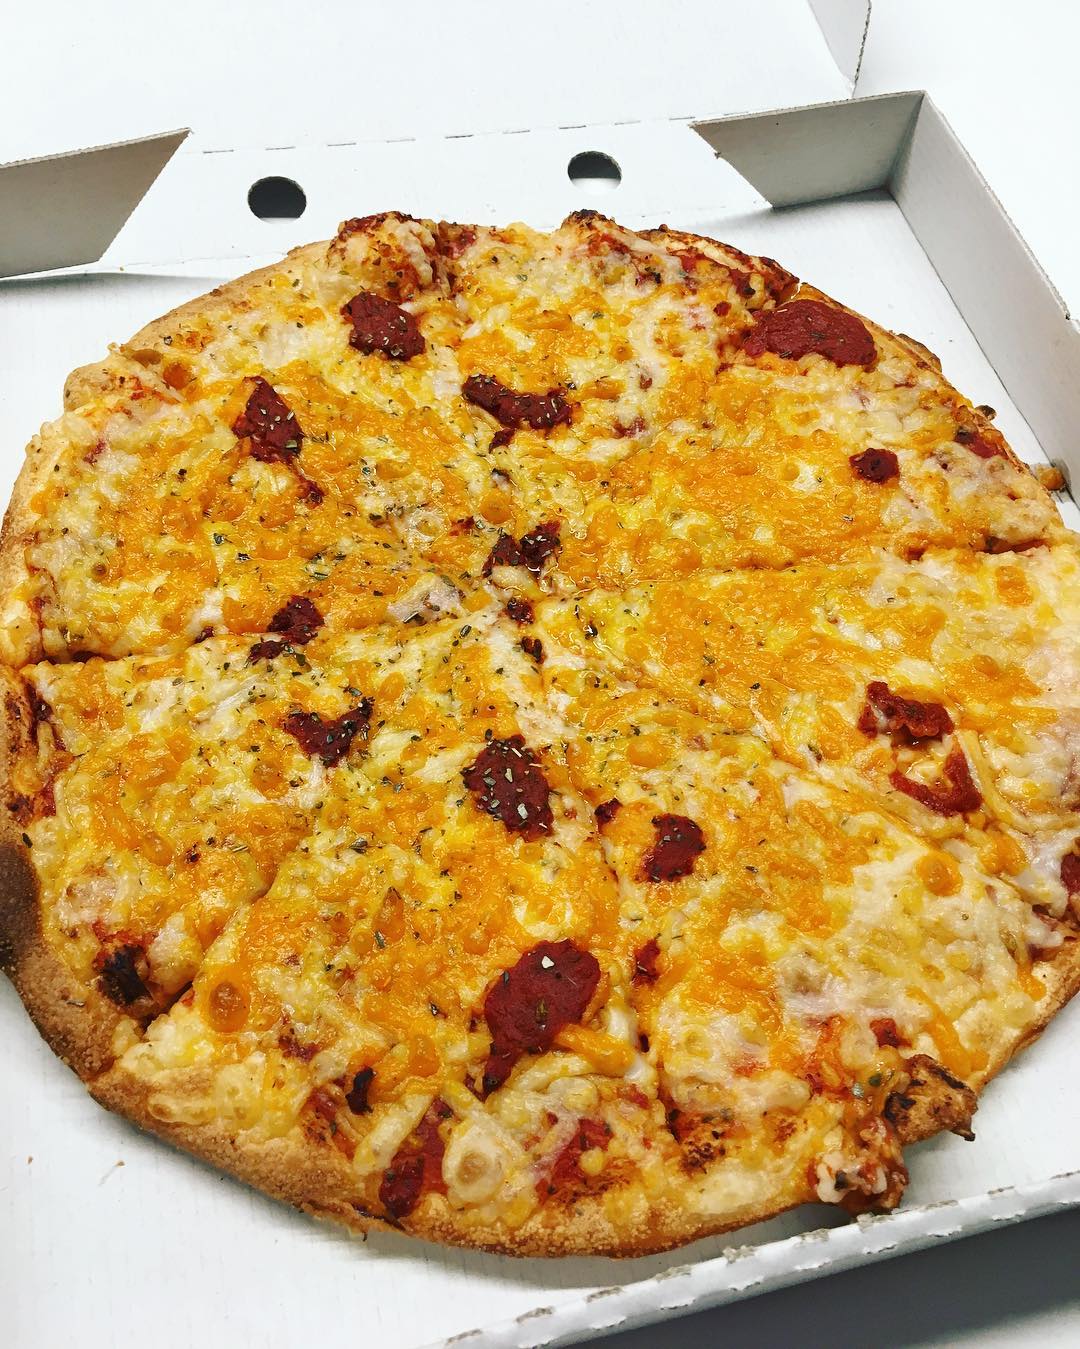 Medium Pizza